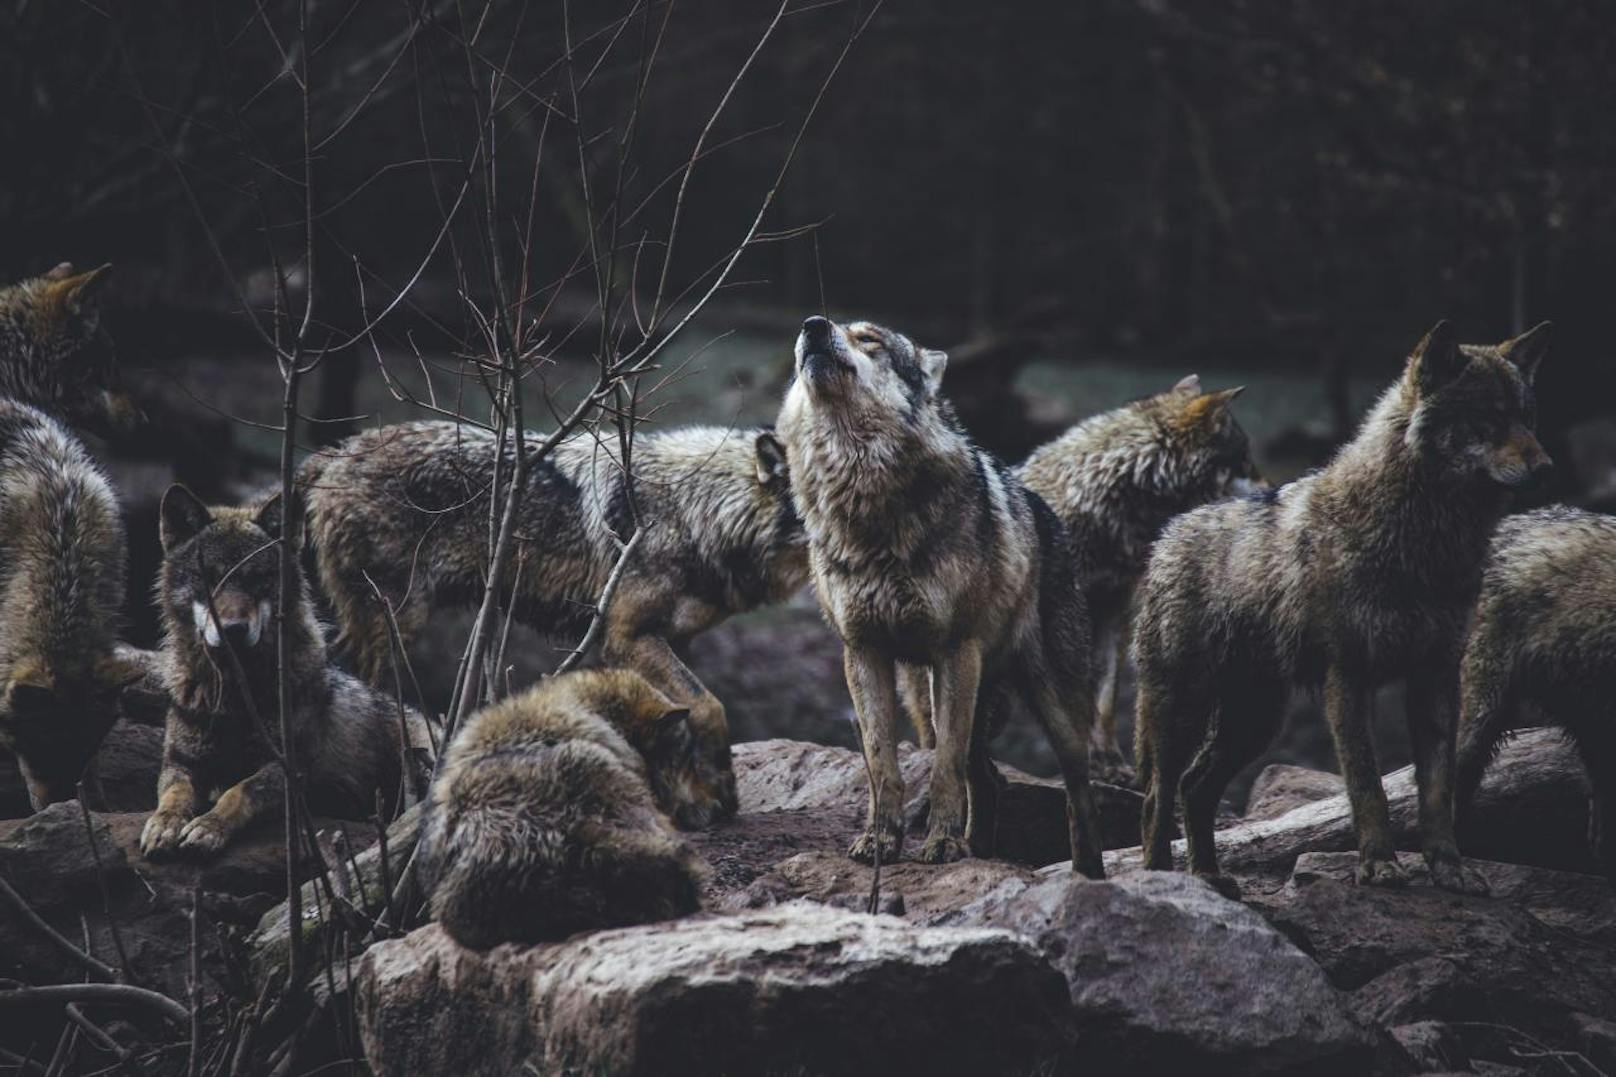 <b>Wolfsfakt 1: In Österreich leben drei Wolfsrudel.</b>
Es gibt zurzeit drei Rudel in Österreich. Seit 2016 eines im Truppenübungsplatz Allentsteig (NÖ). Seit 2018 zwei weitere im Grenzgebiet zu Tschechien. Das macht samt Durchzüglern etwa <b>25 Wölfe.</b> 
<b>Info</b>: Ein Rudel besteht aus vier bis sechs Tieren.